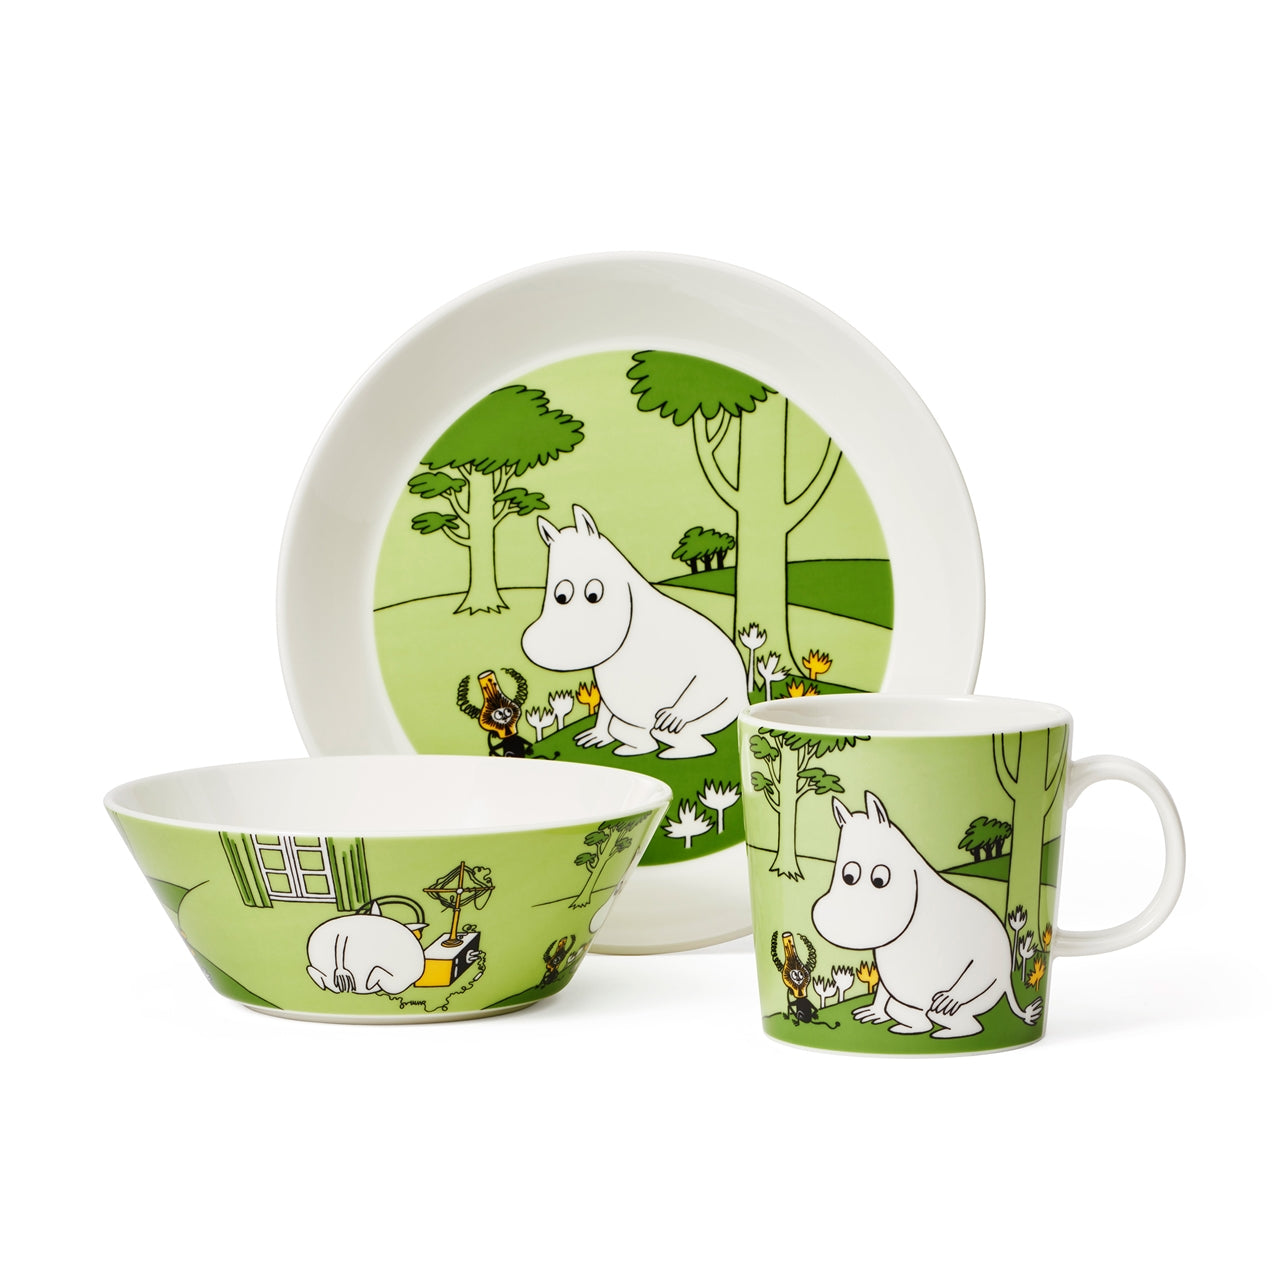 Moomintroll Grass Green Plate